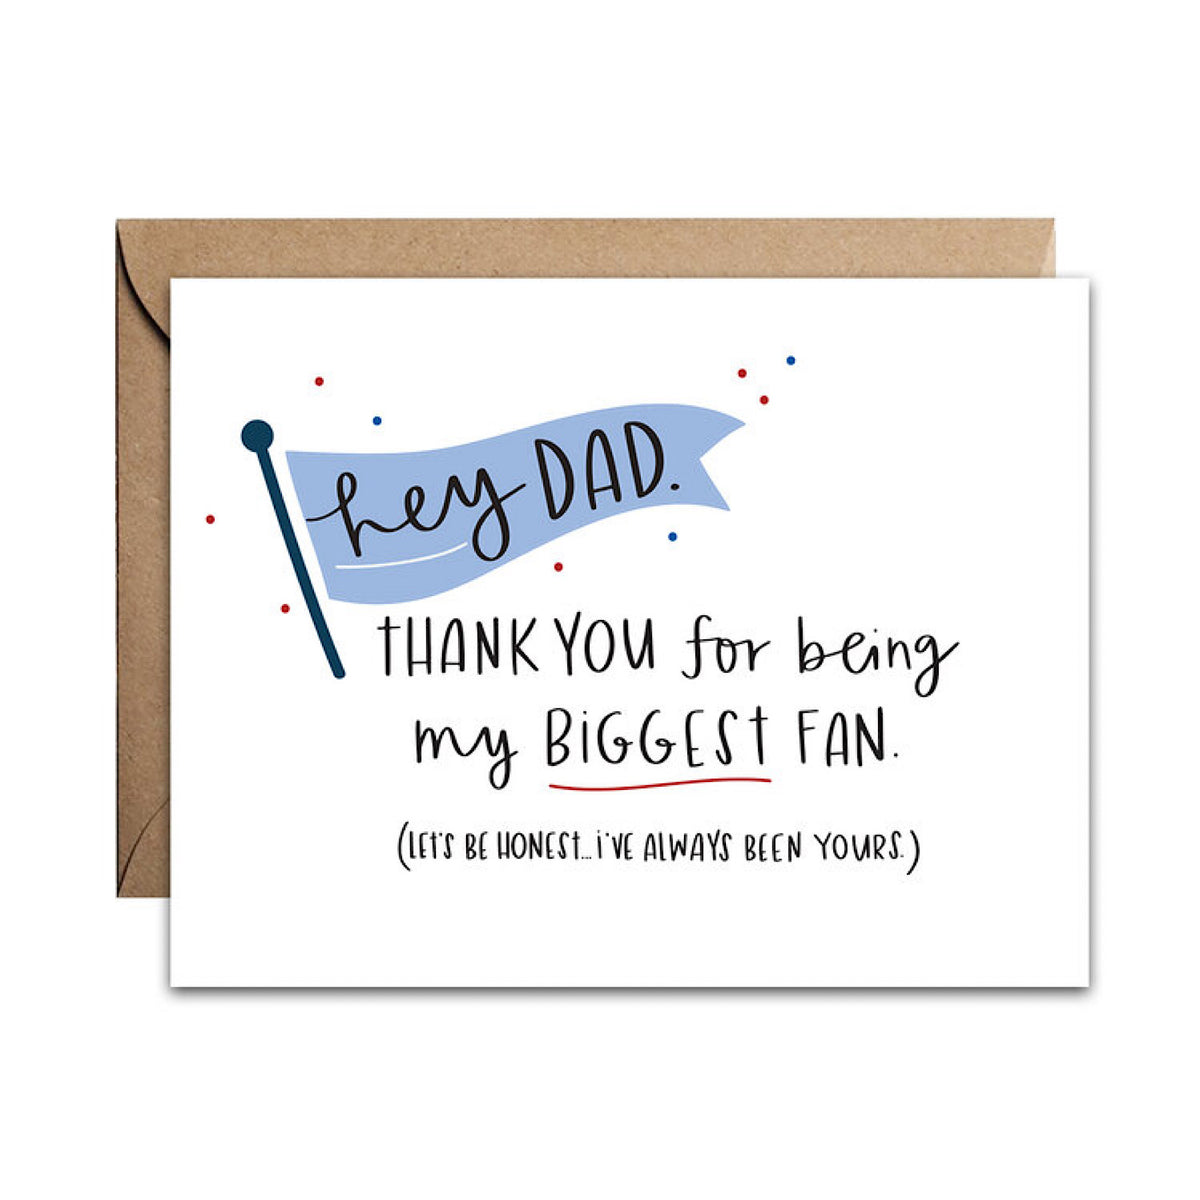 Hey Dad Card